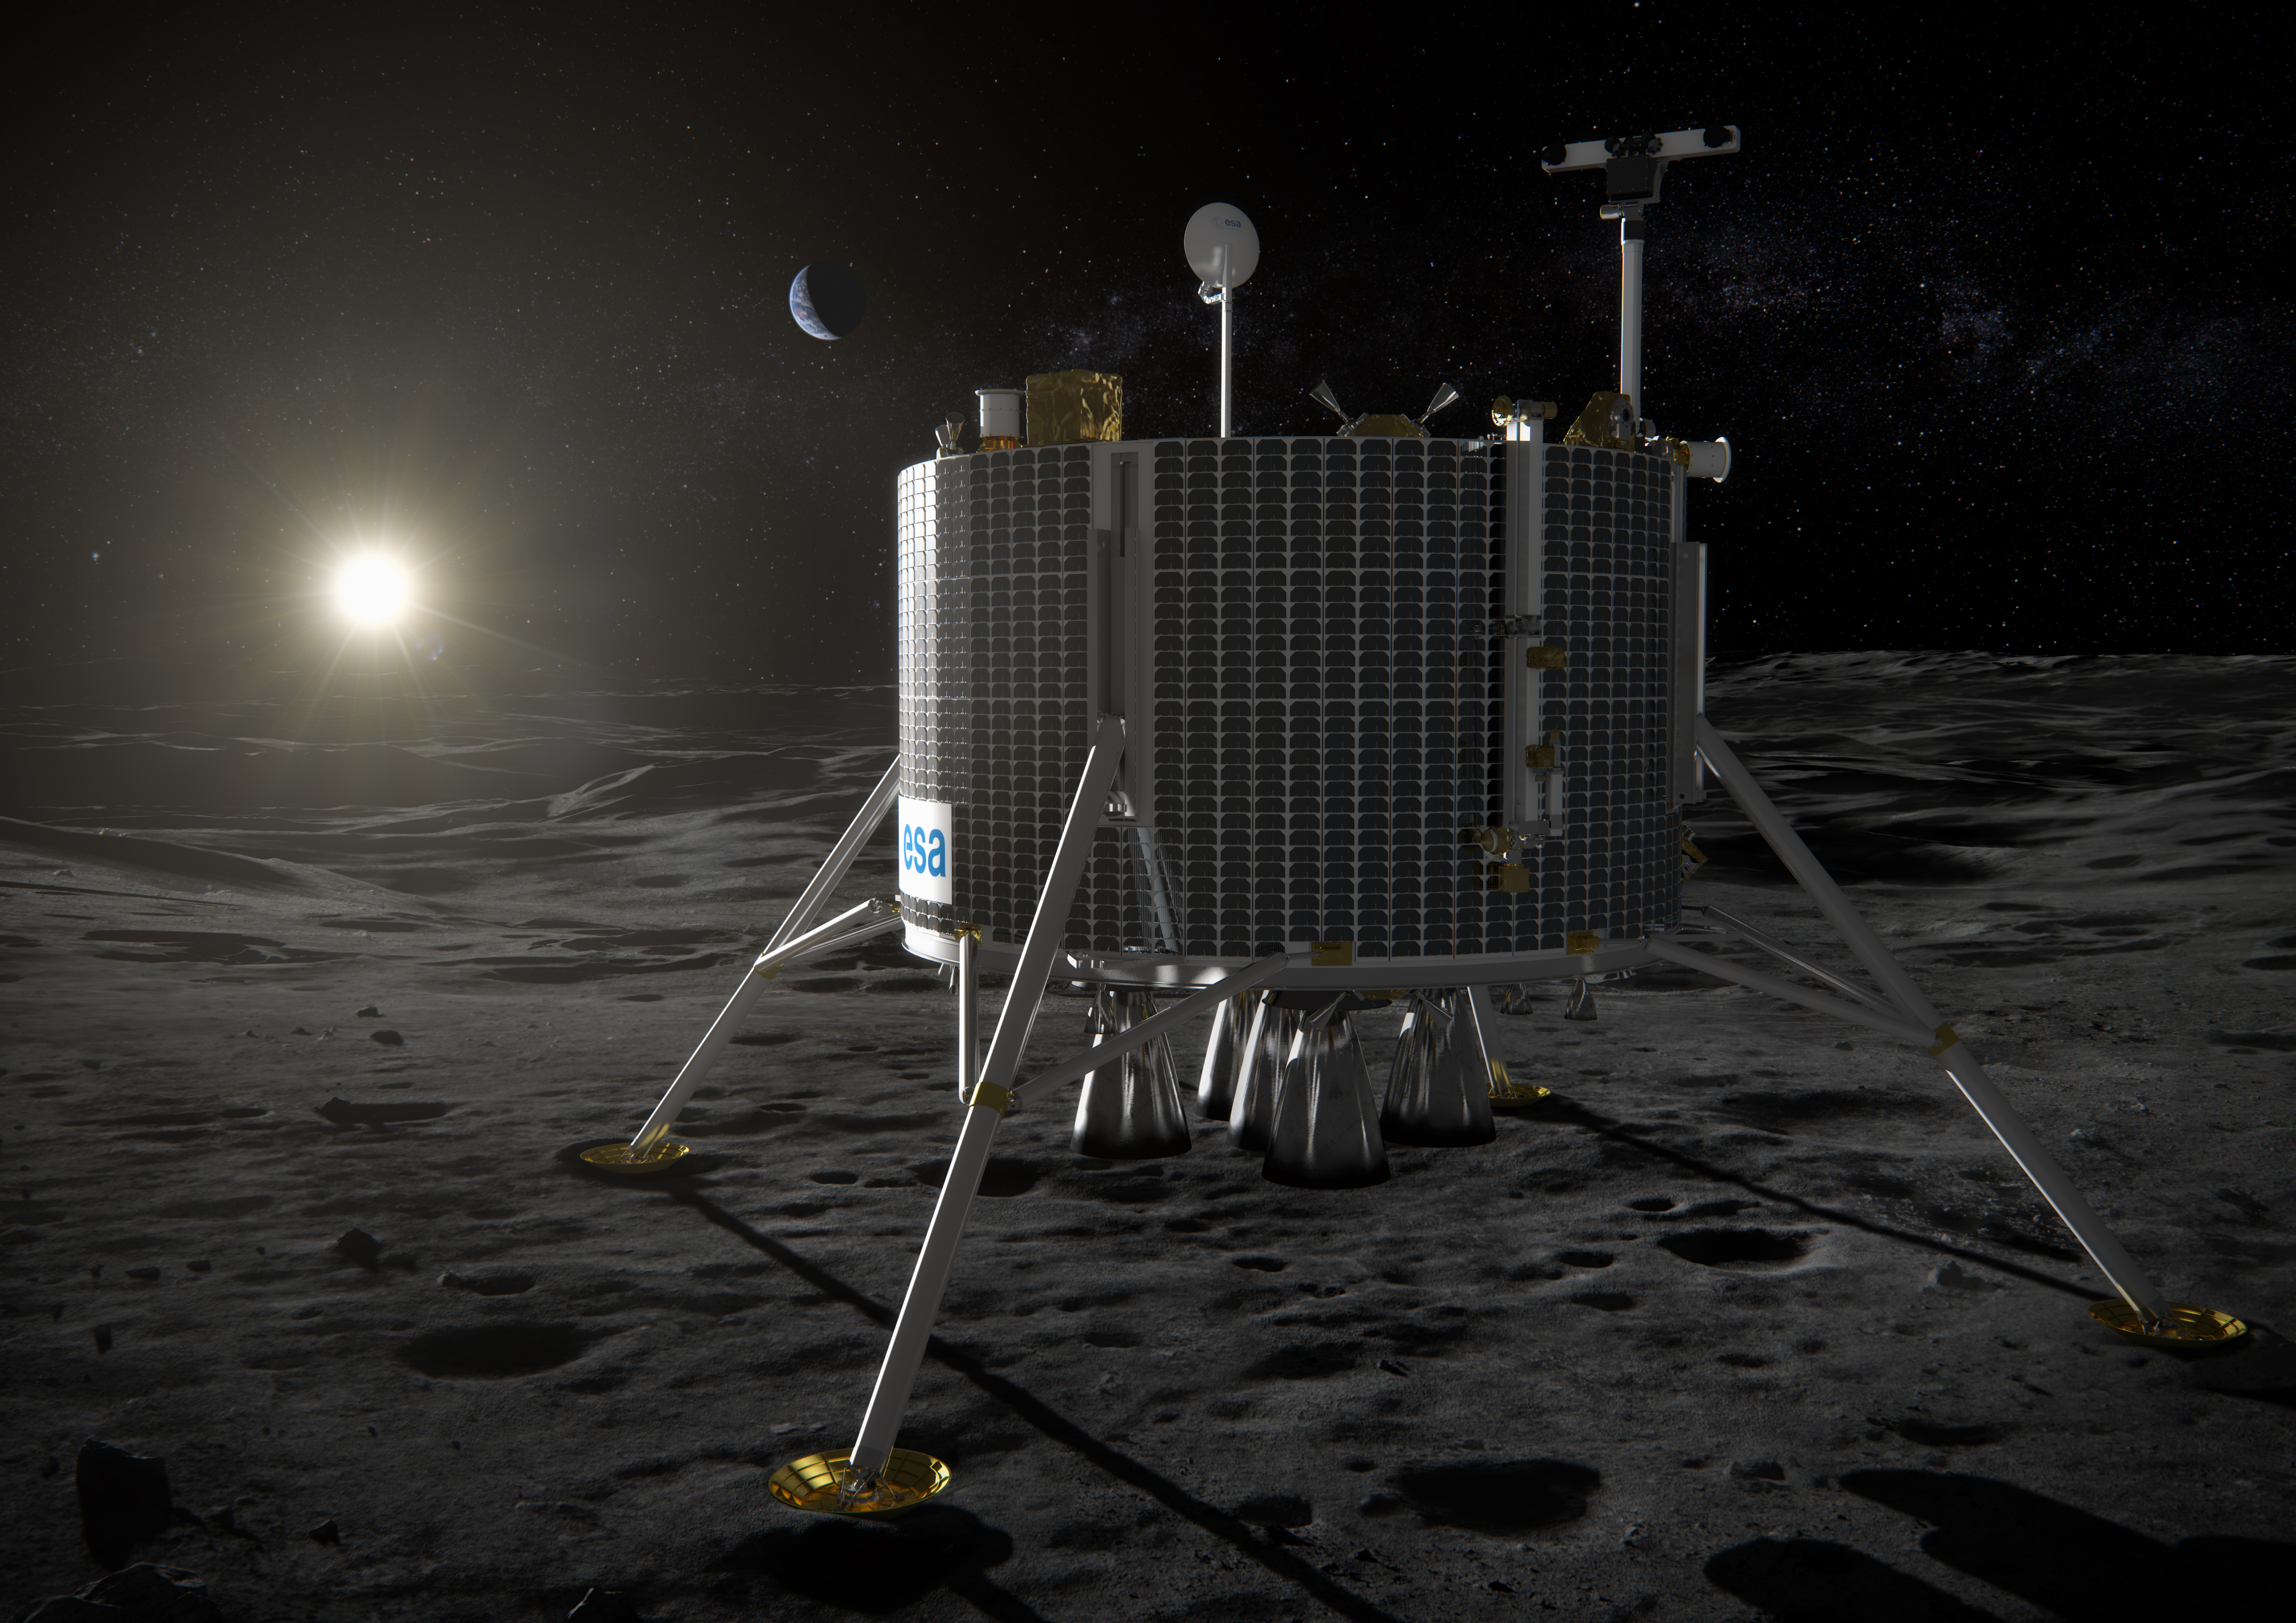 Moon russia. Lunar Lander космический аппарат. Луна 27 посадочный модуль. Постройки в космосе. Космическая база на Луне.